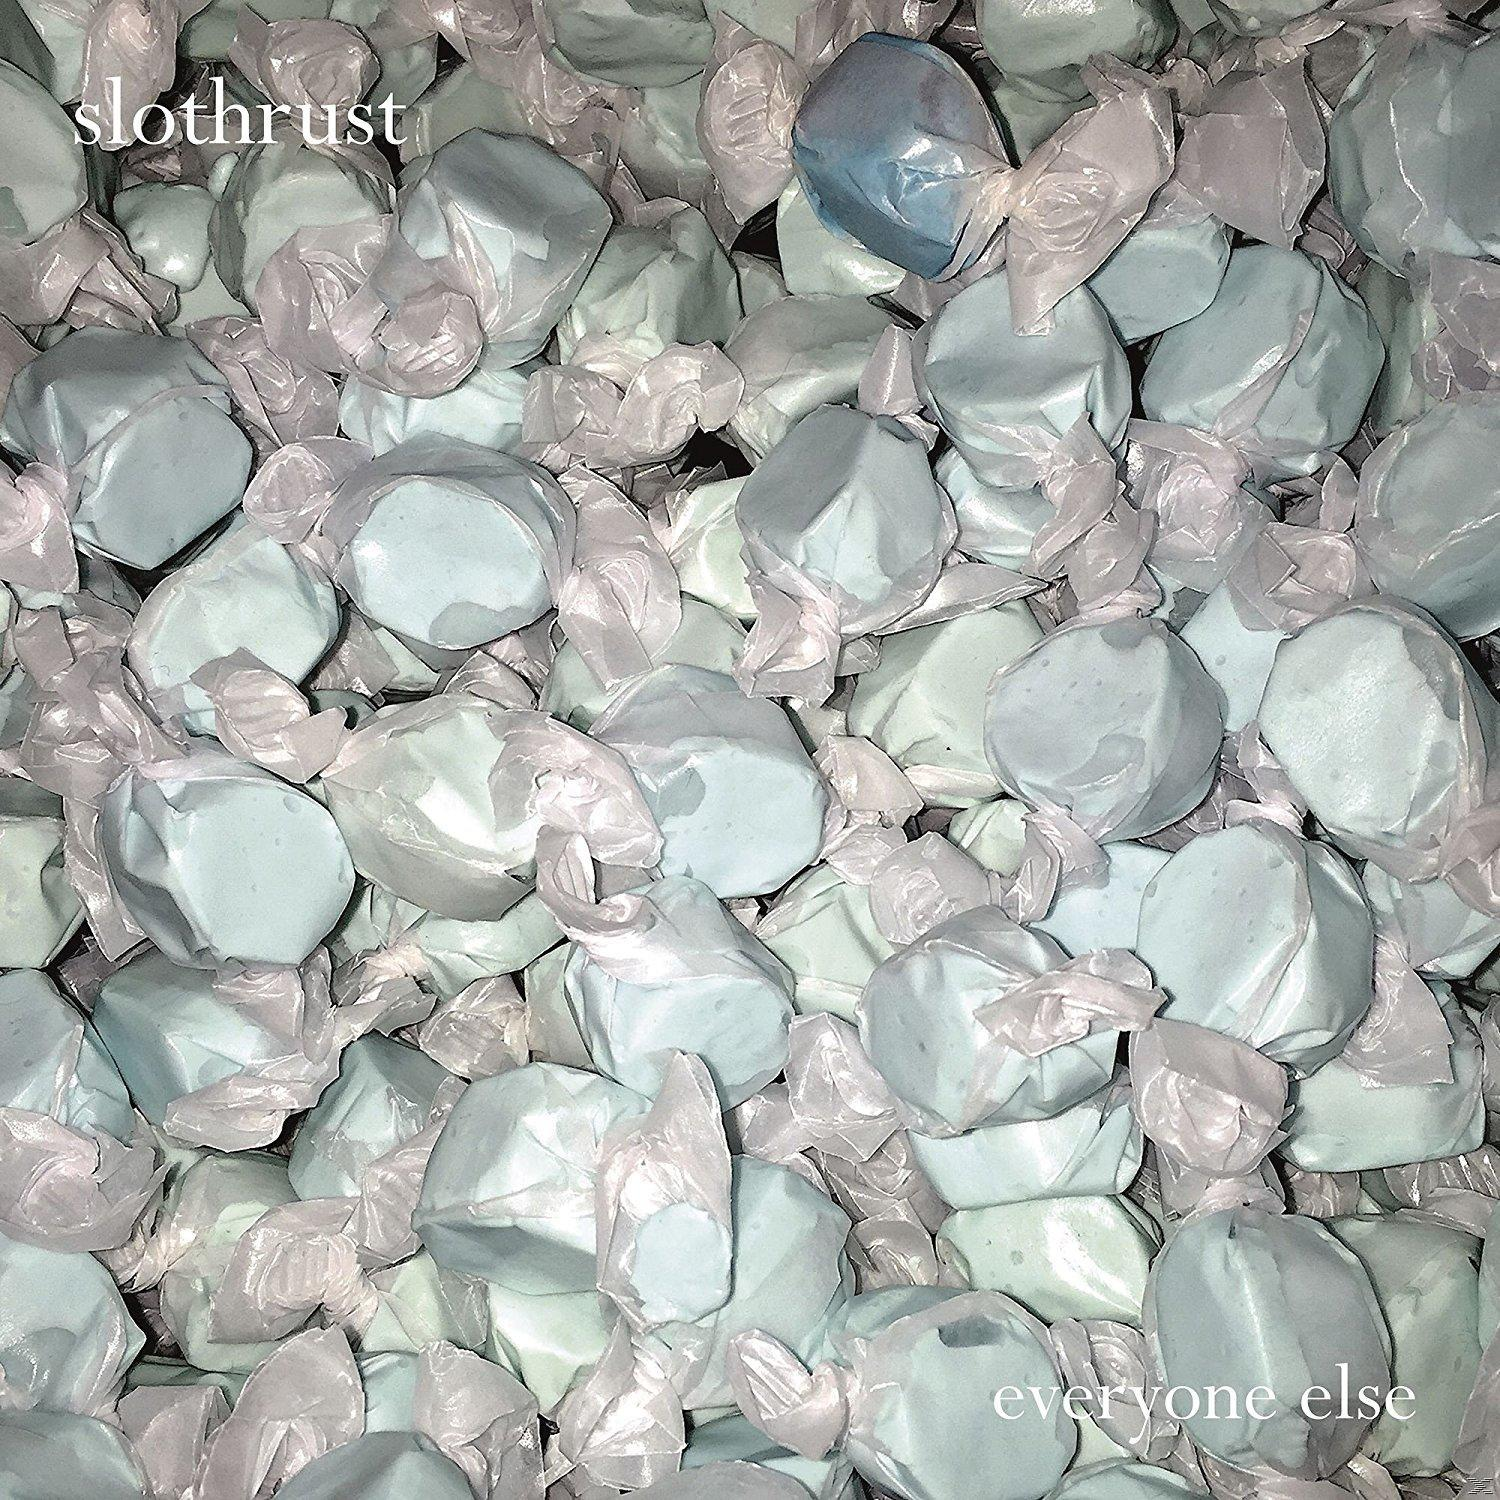 (Vinyl) Slothrust - Else Everyone -